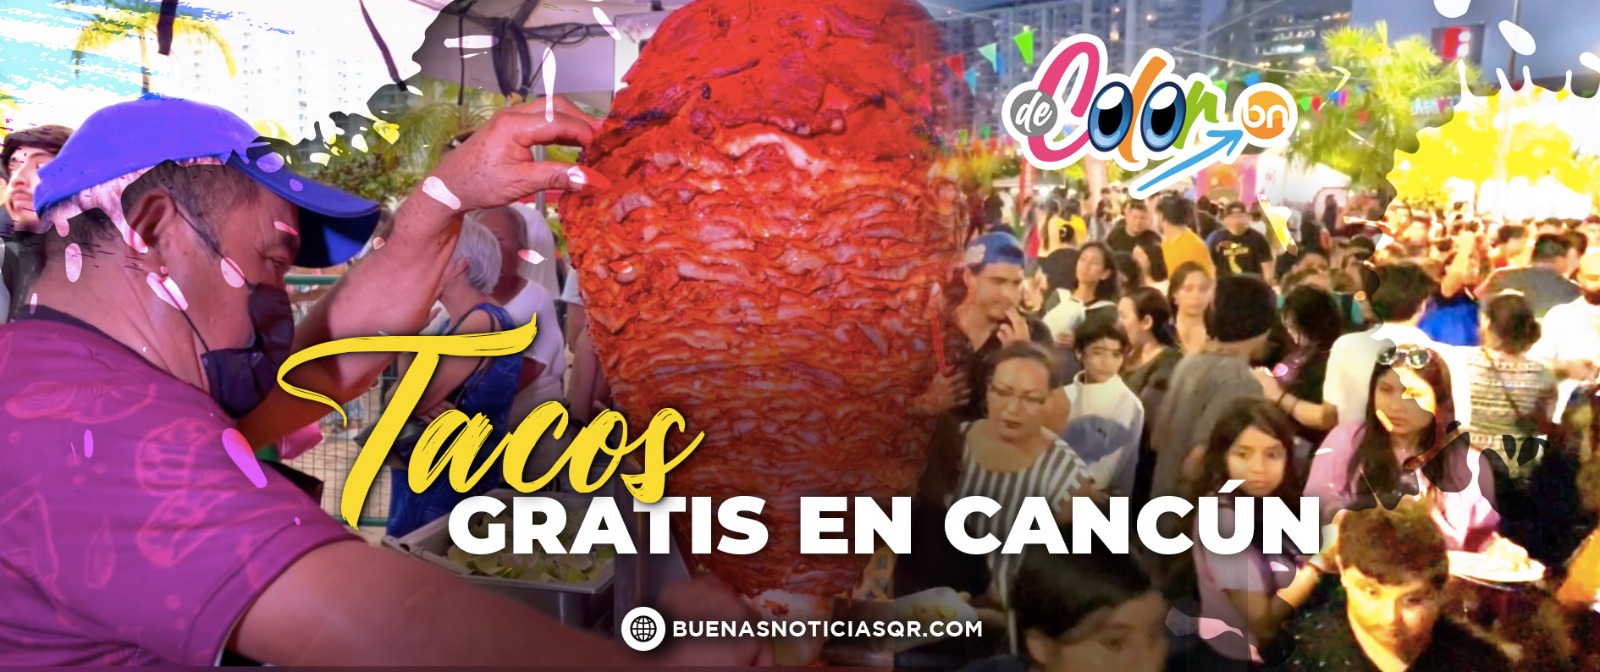 VIDEO: Así disfrutaron cancunenses el Festival del Taco